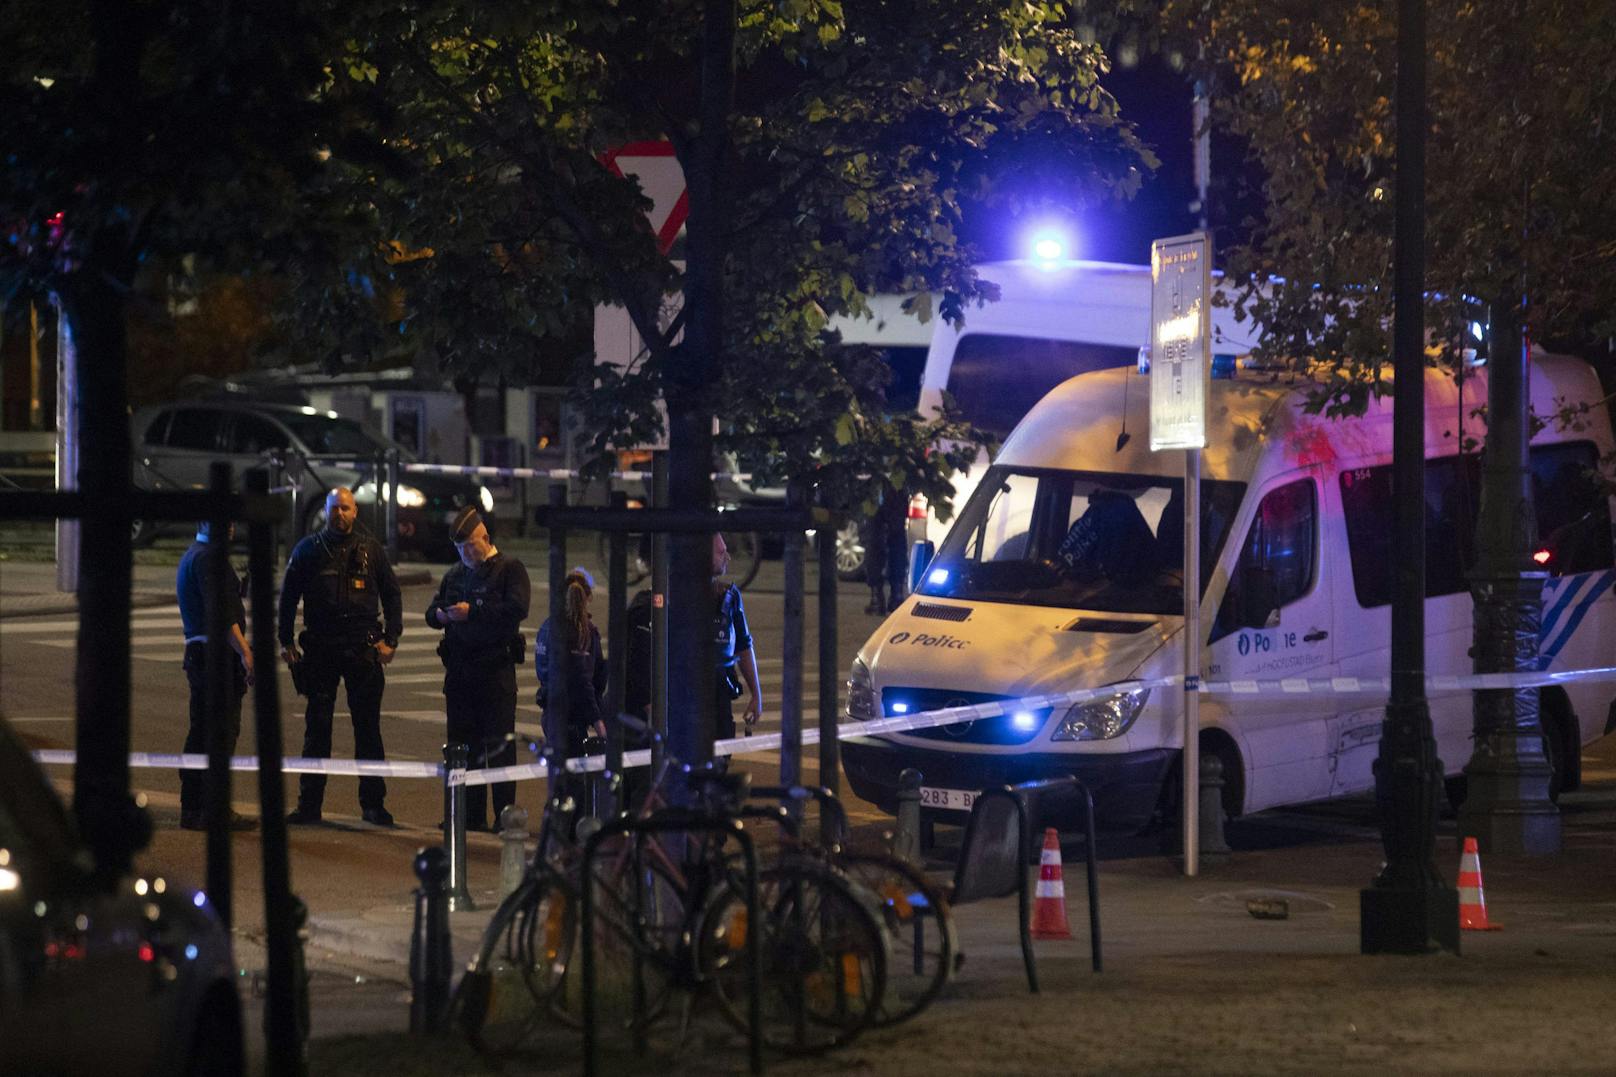 Fußball-Fans in Brüssel getötet! Polizei jagt Attentäter